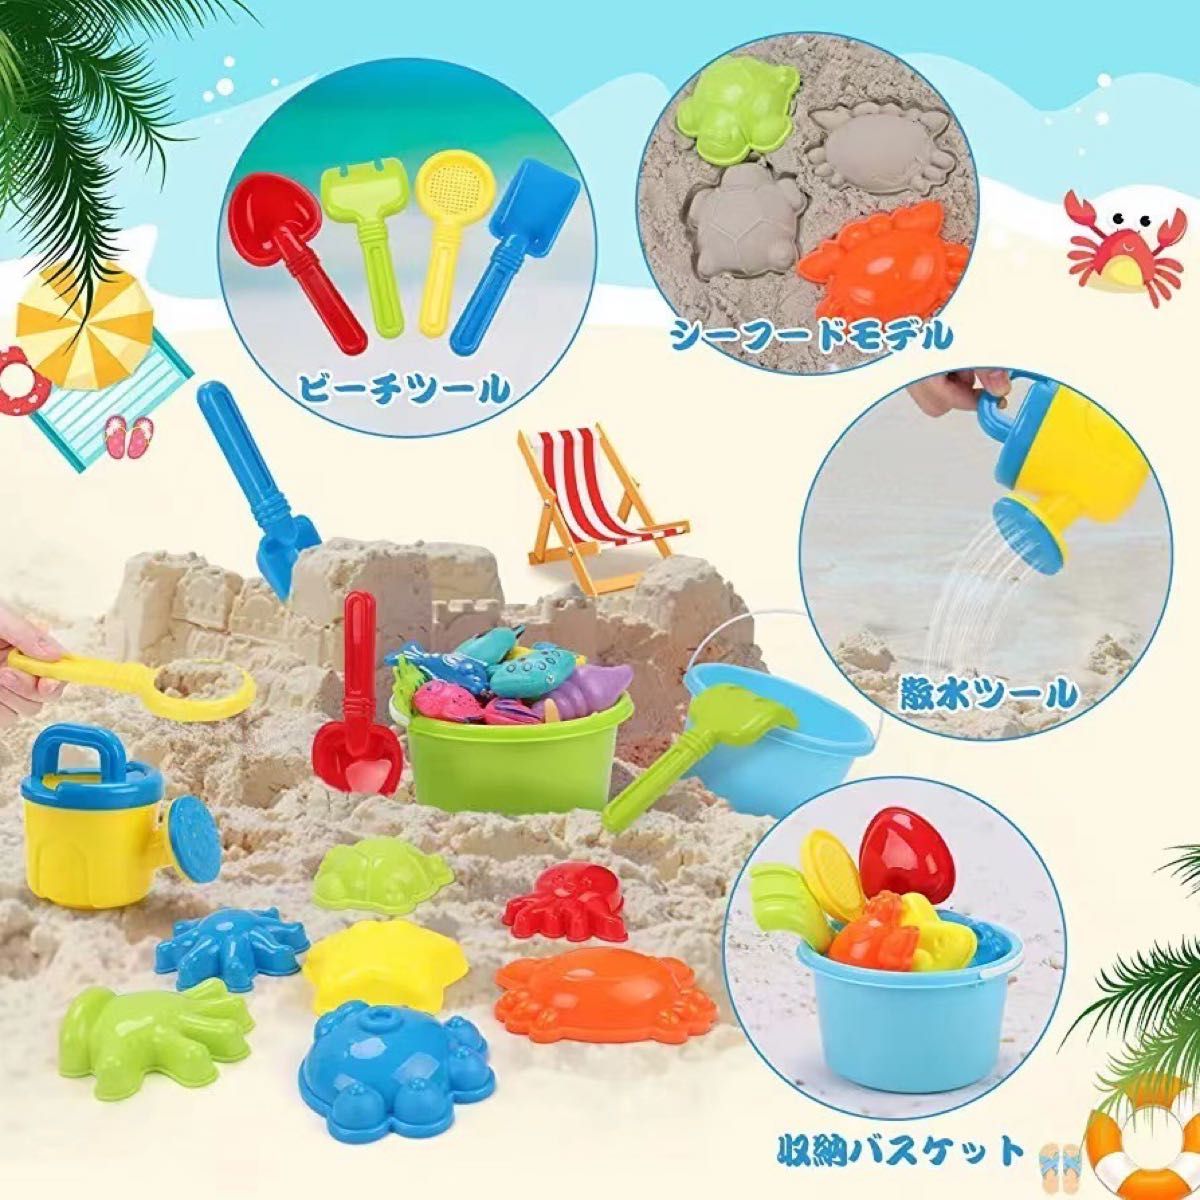 水遊び 知育玩具 おもちゃ 砂場セット 魚釣り おもちゃ 砂遊び お風呂 プール クジラ